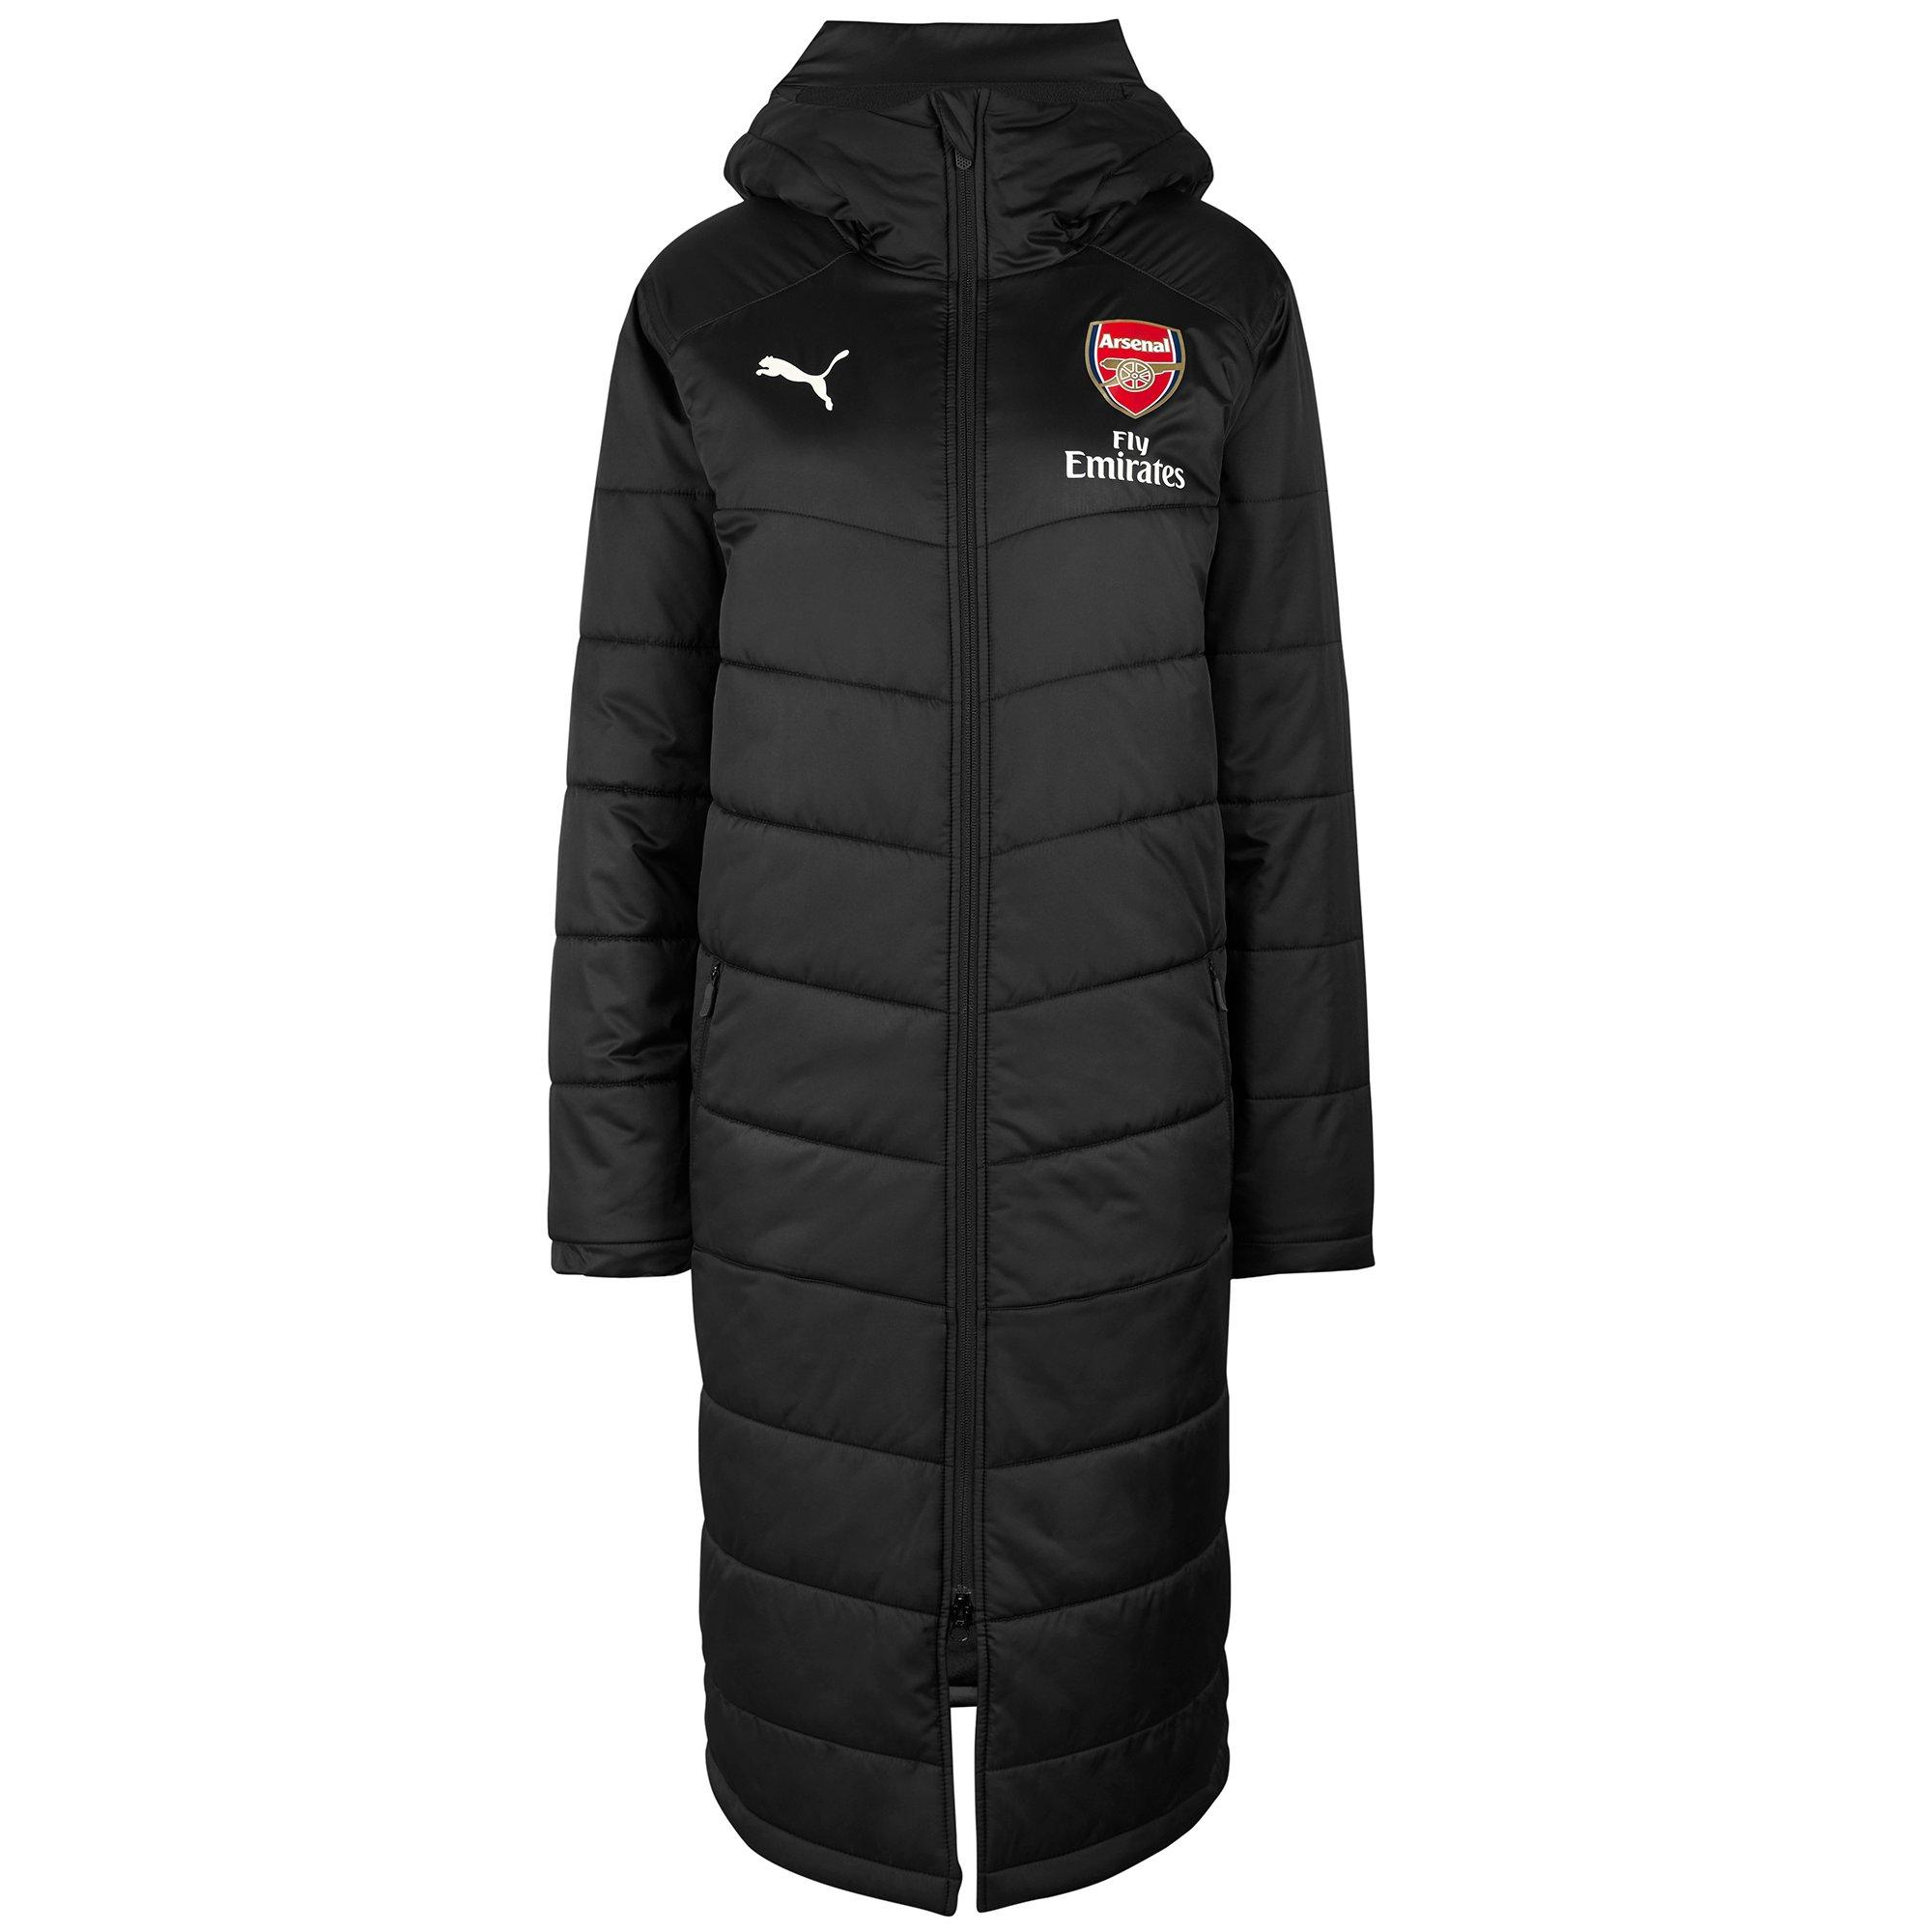 Arsenal 18/19 Long Bench Black Jacket 